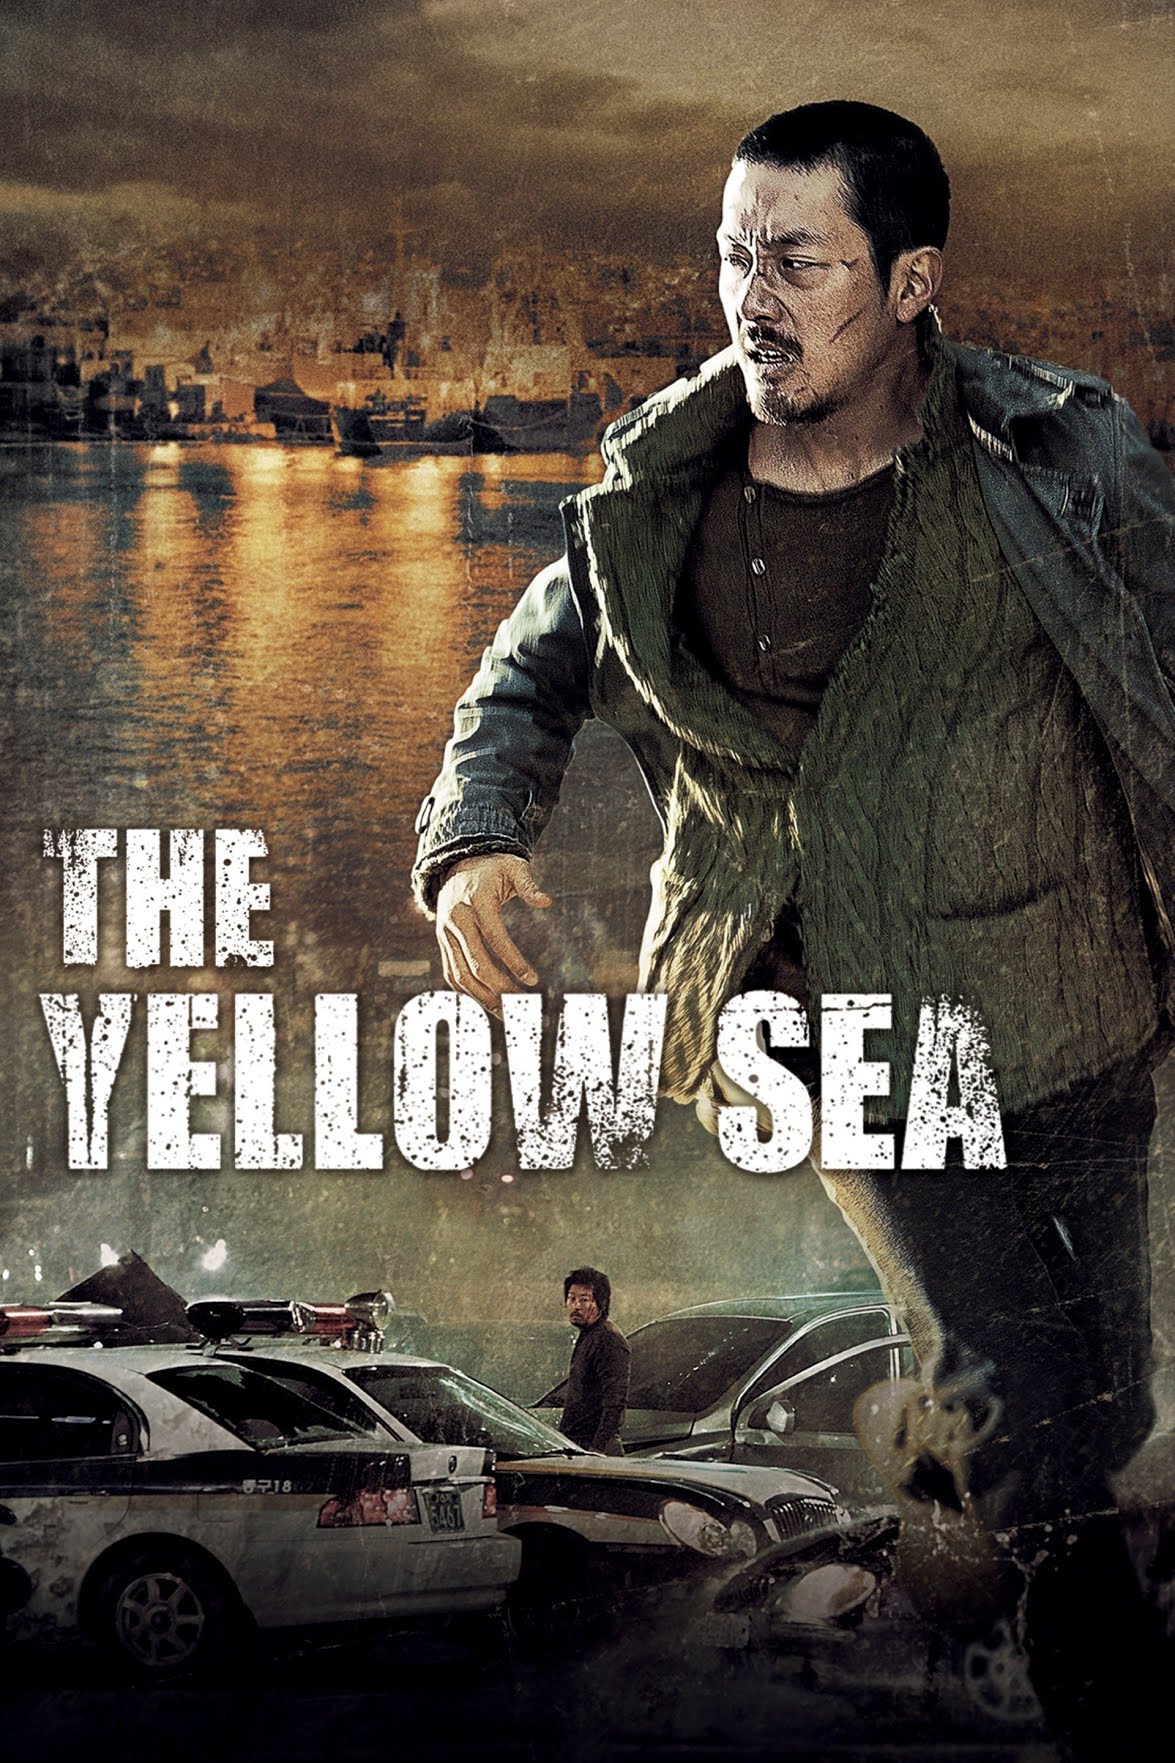 The Yellow Sea [HD] (2013)